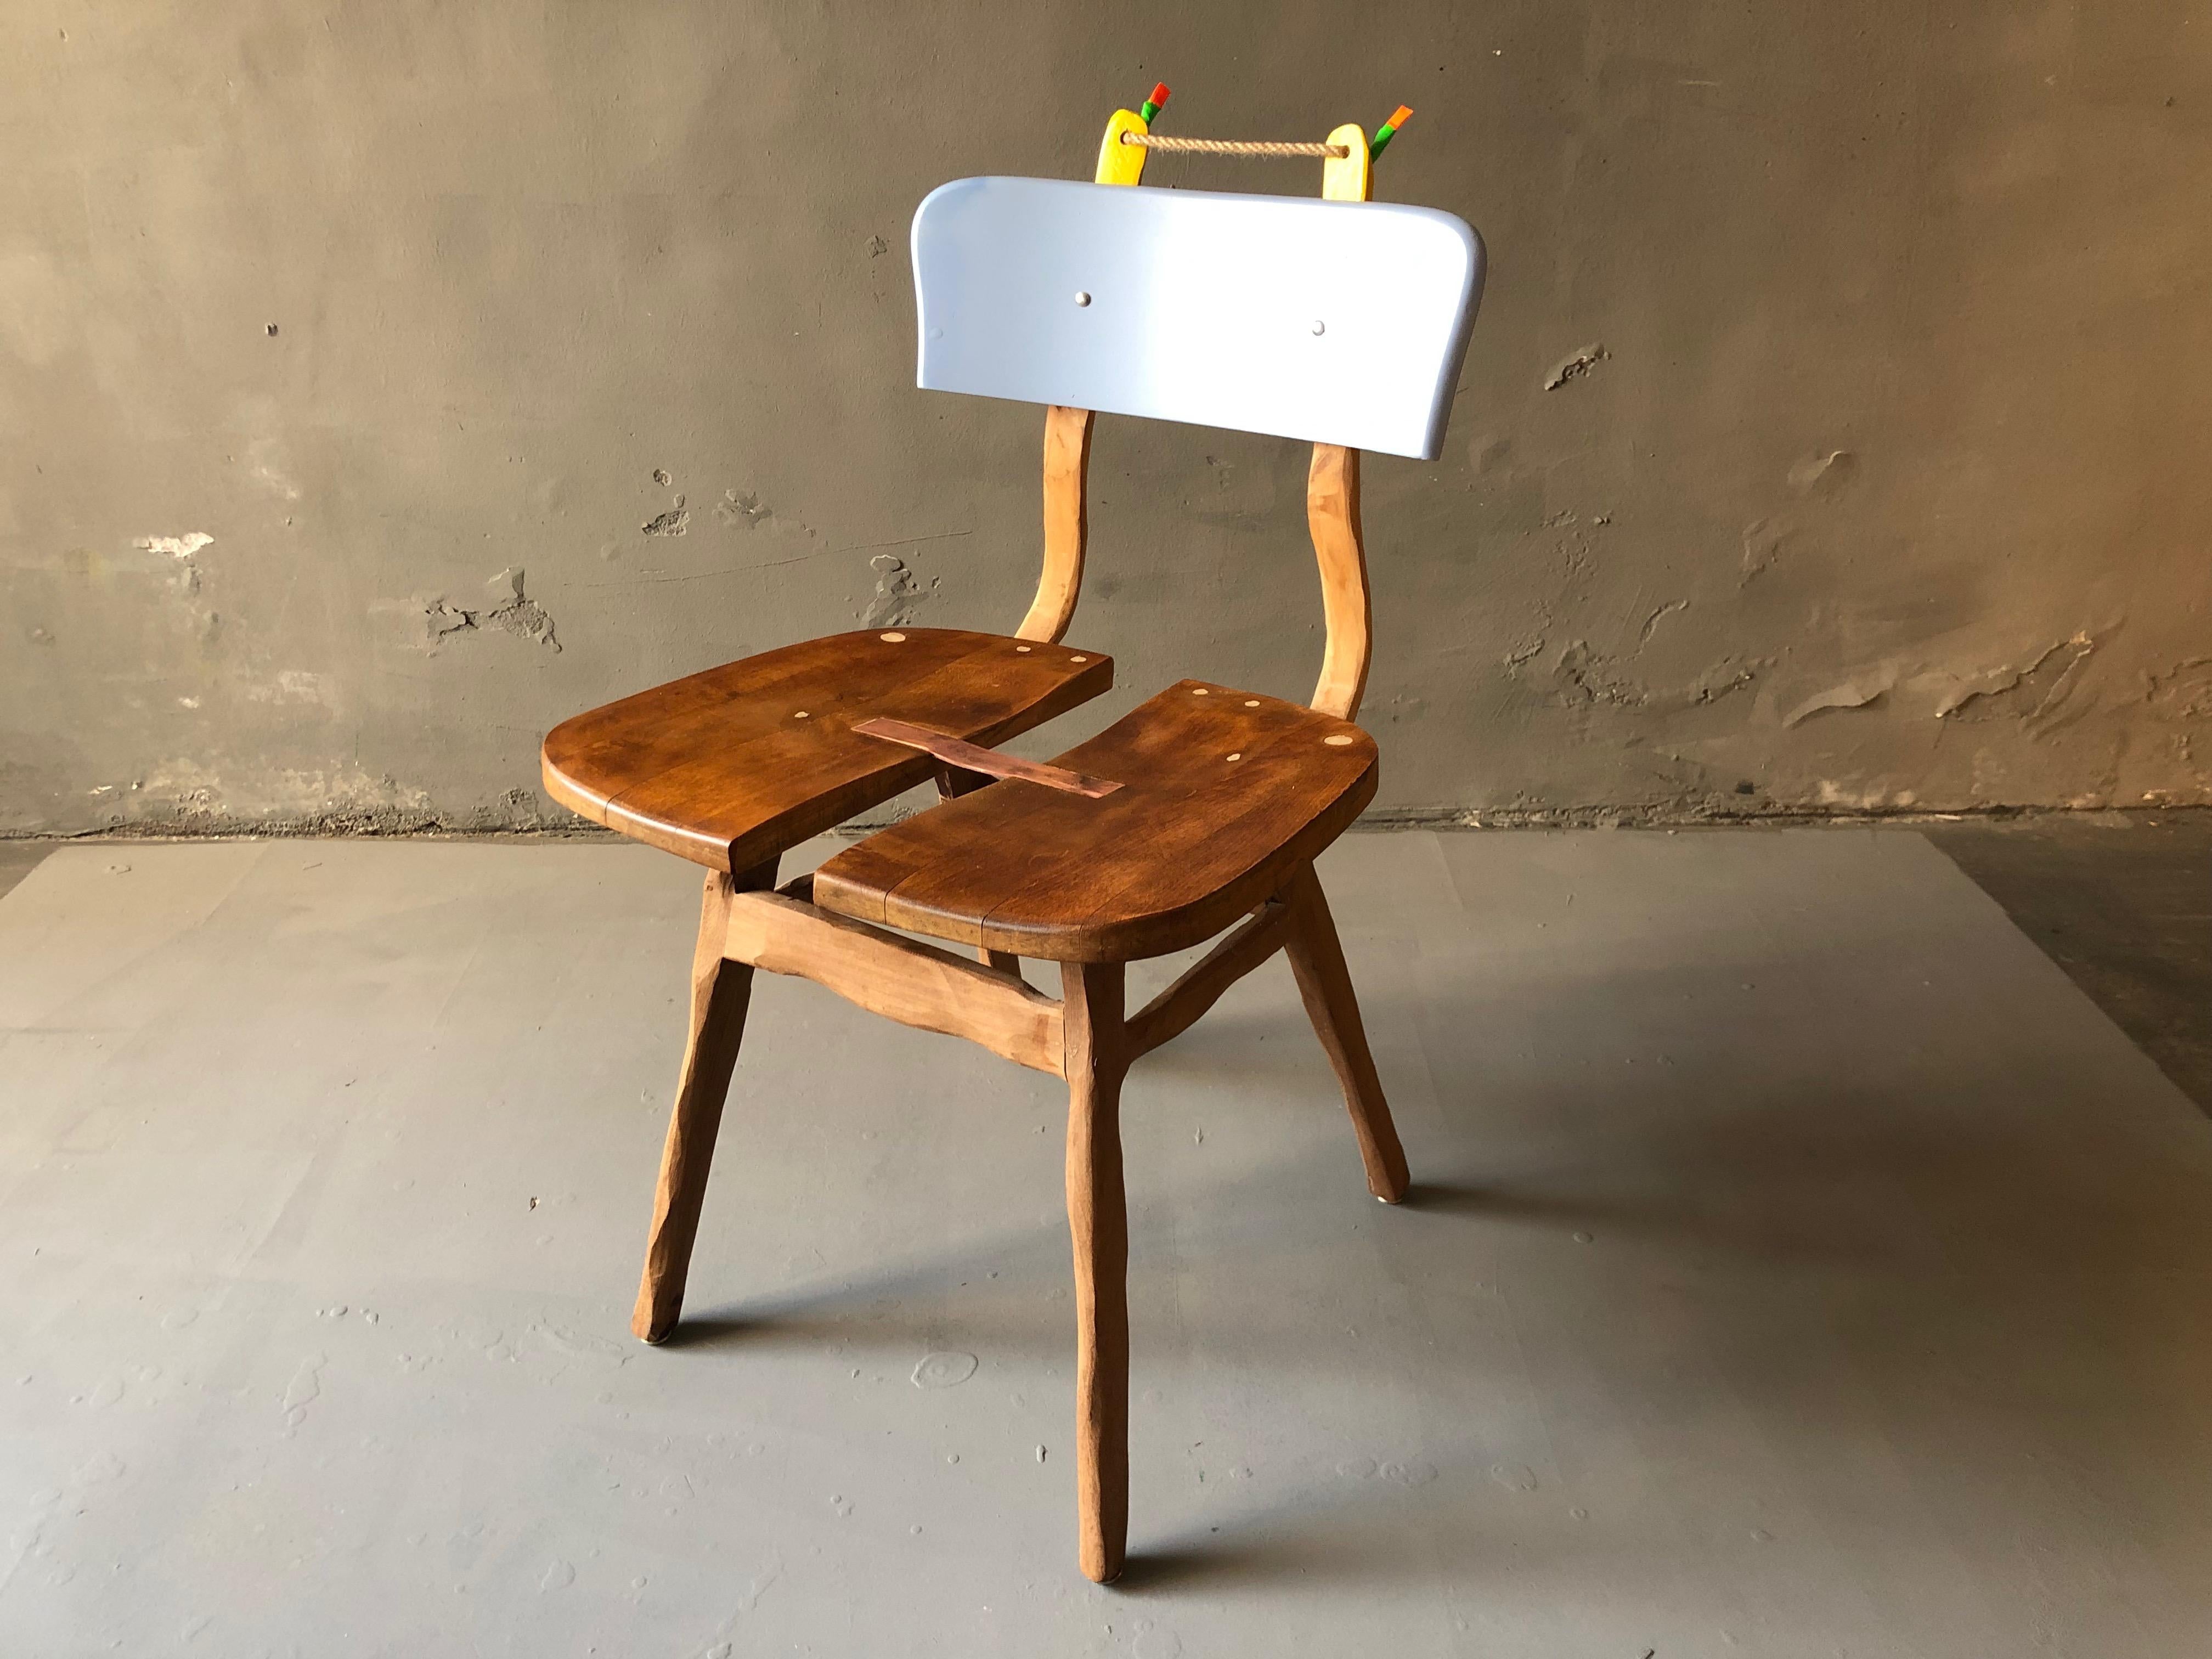 Chaise composée de 3 chaises, rajoutée d'une bande de laiton, peinte et laquée. Un exemple parfait de l'œuvre d'art fonctionnelle de Staab.
Par mon travail, je transforme chaque chaise en un objet unique et individuel. Des chaises autrefois